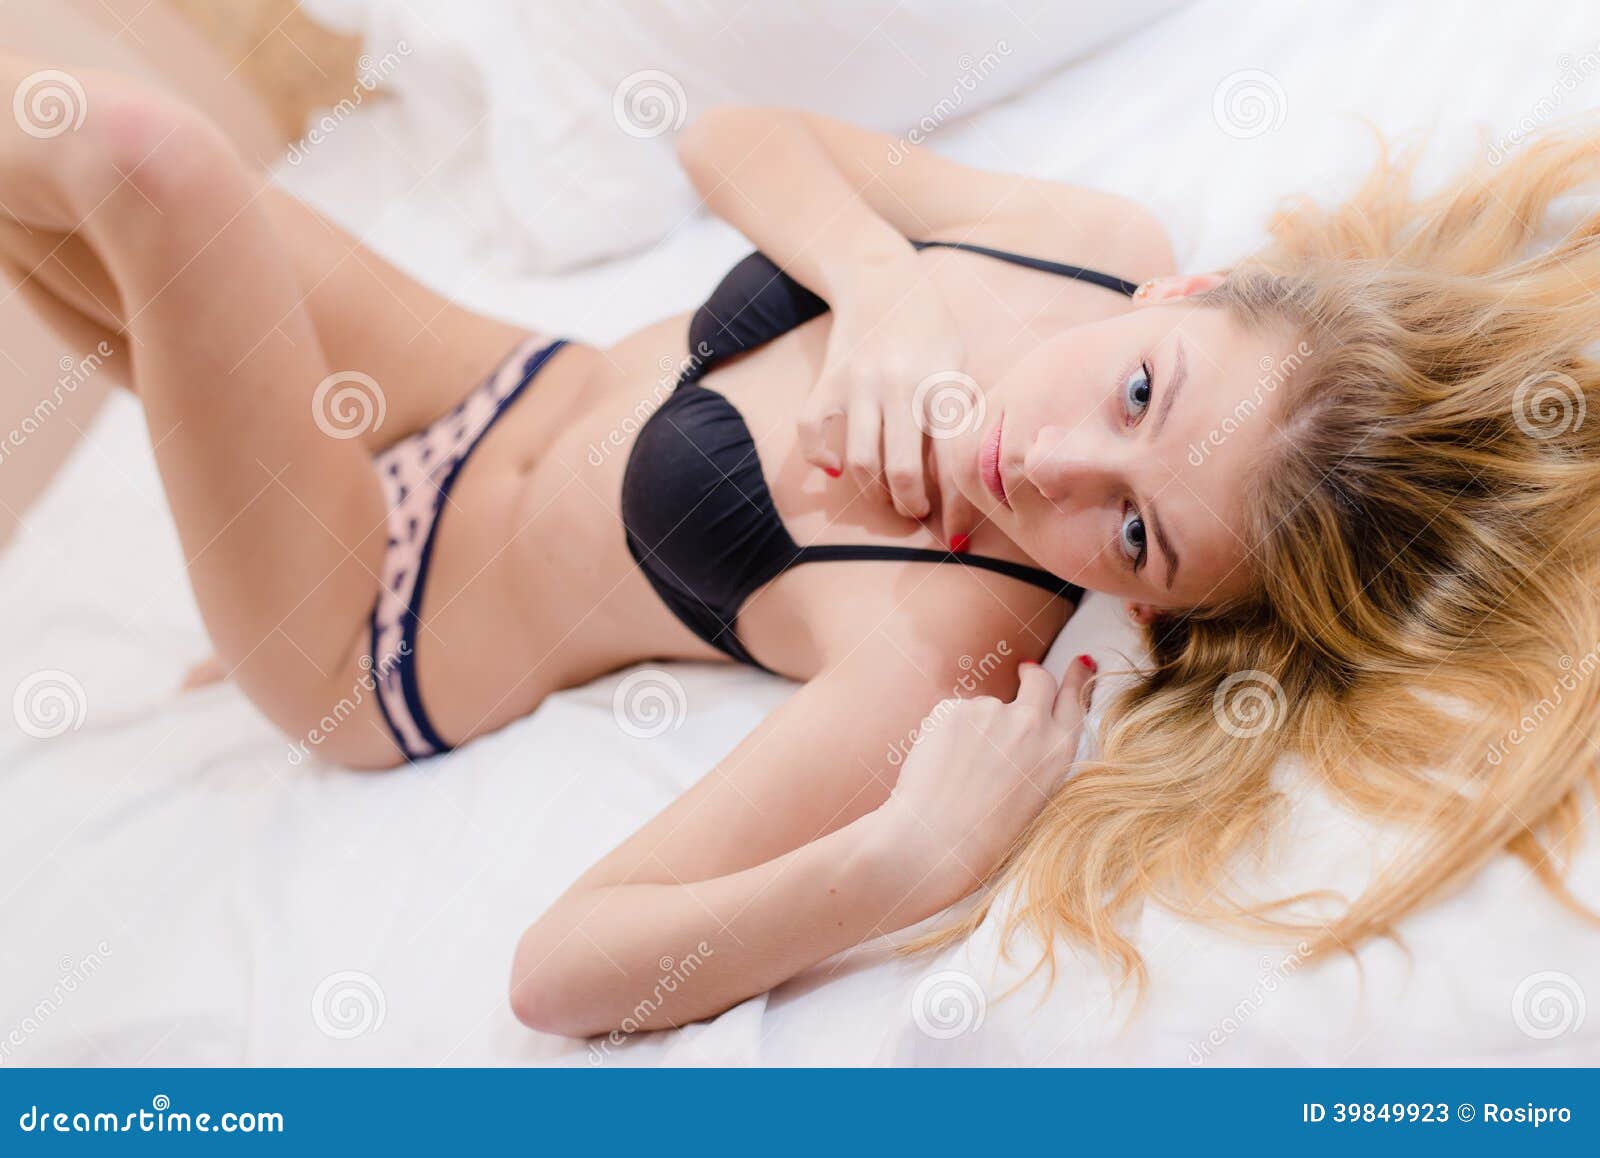 Mujer Rubia Joven Hermosa Atractiva Que Miente En Ropa Interior En La Imagen de - Imagen de publicidad, 39849923